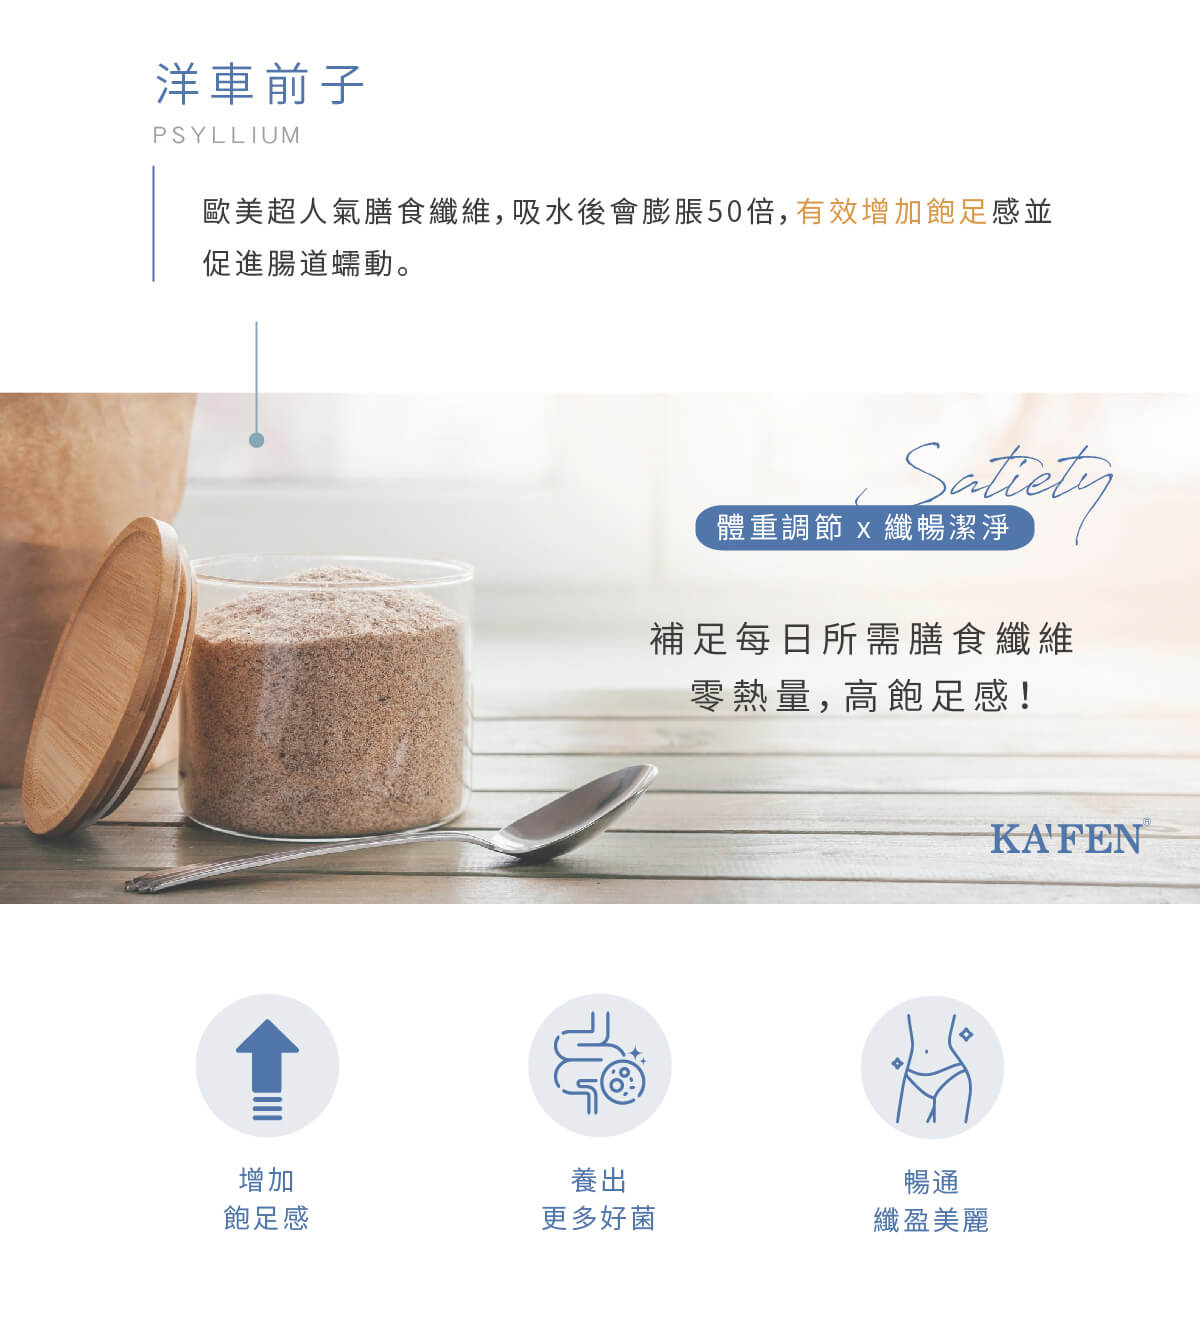 【KAFEN】纖淨膳食纖維粉(10gx15包/盒) 多種天然綜合蔬果酵素